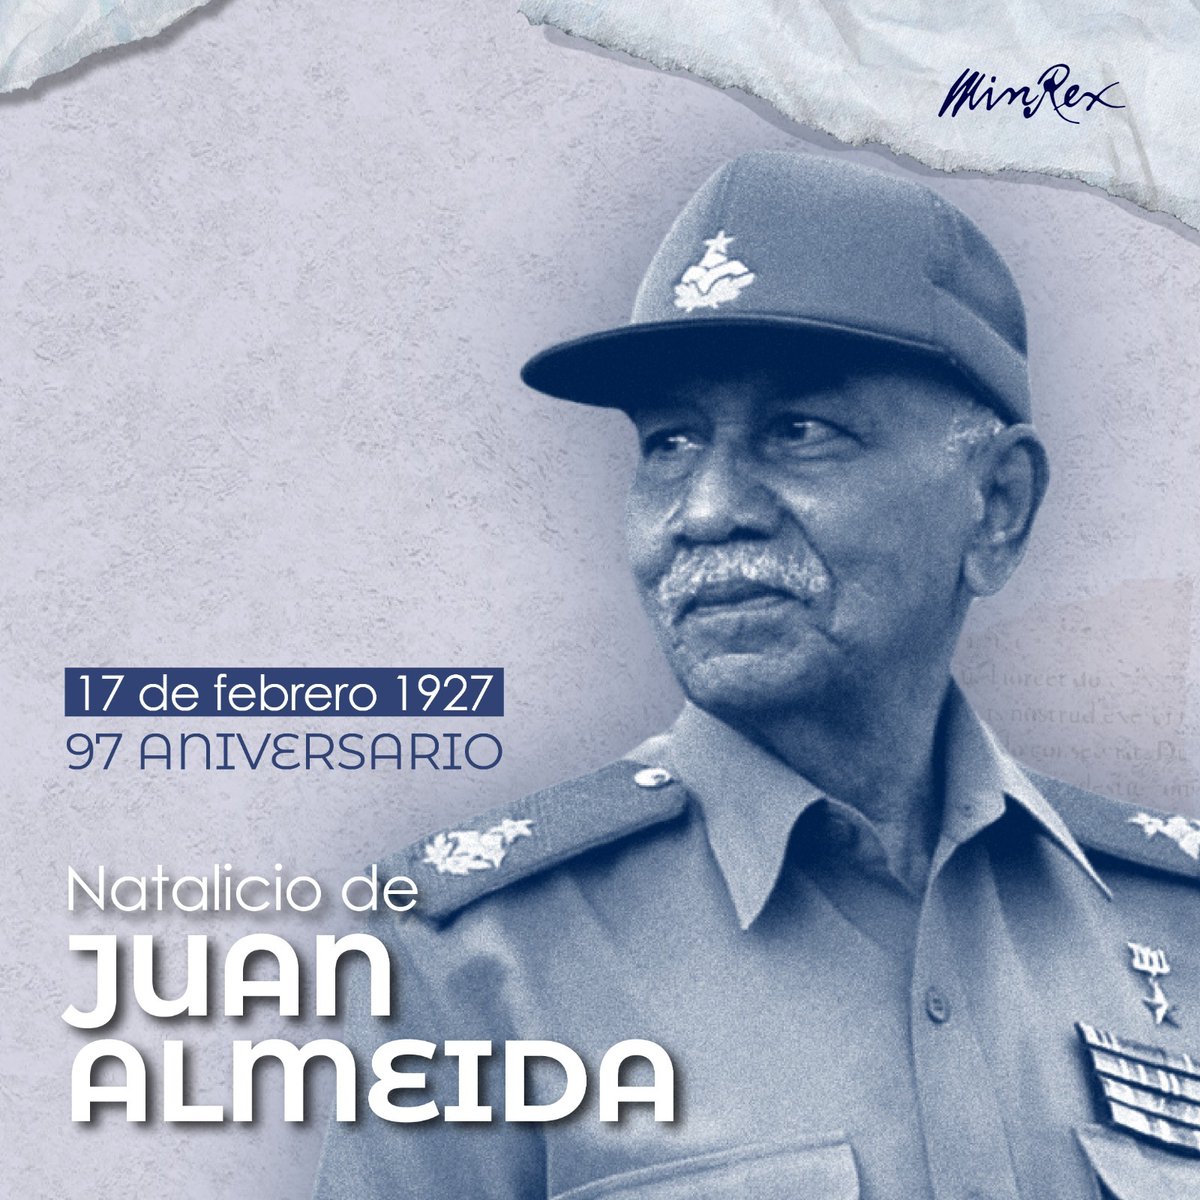 Hoy se cumplen 97 años del nacimiento de Juan Almeida Bosque, un hombre de extraordinaria fe en la victoria, amor por el pueblo y sensibilidad artística. Siempre te recordamos ¡Comandante! #AlmeidaVive